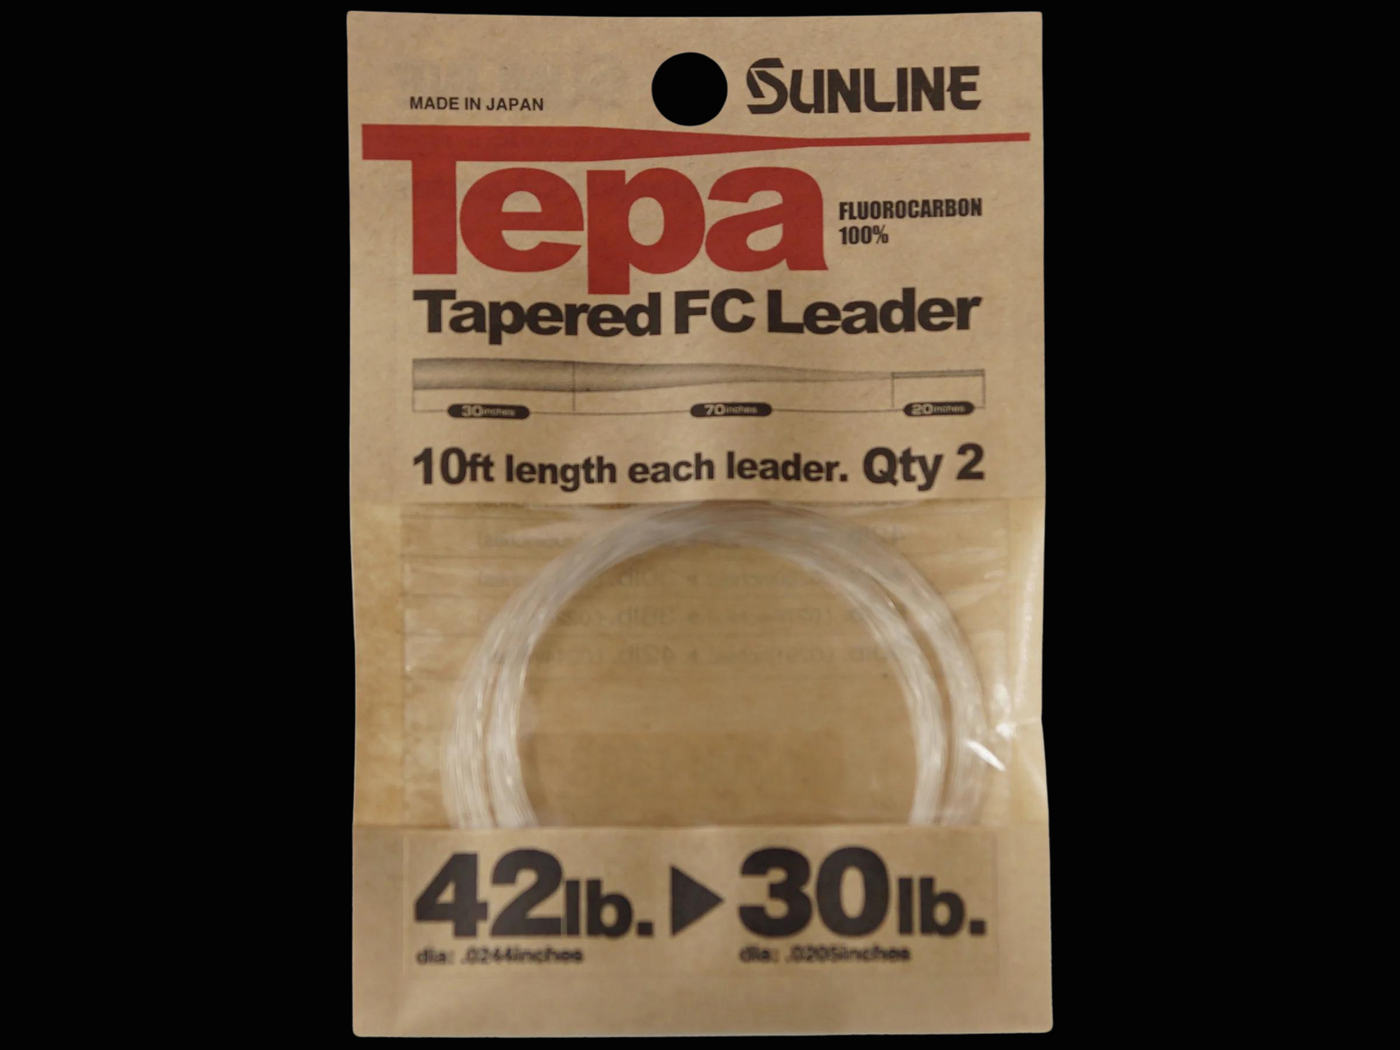 Sunline Tepa Tapered FC Leader 10ft 2pk